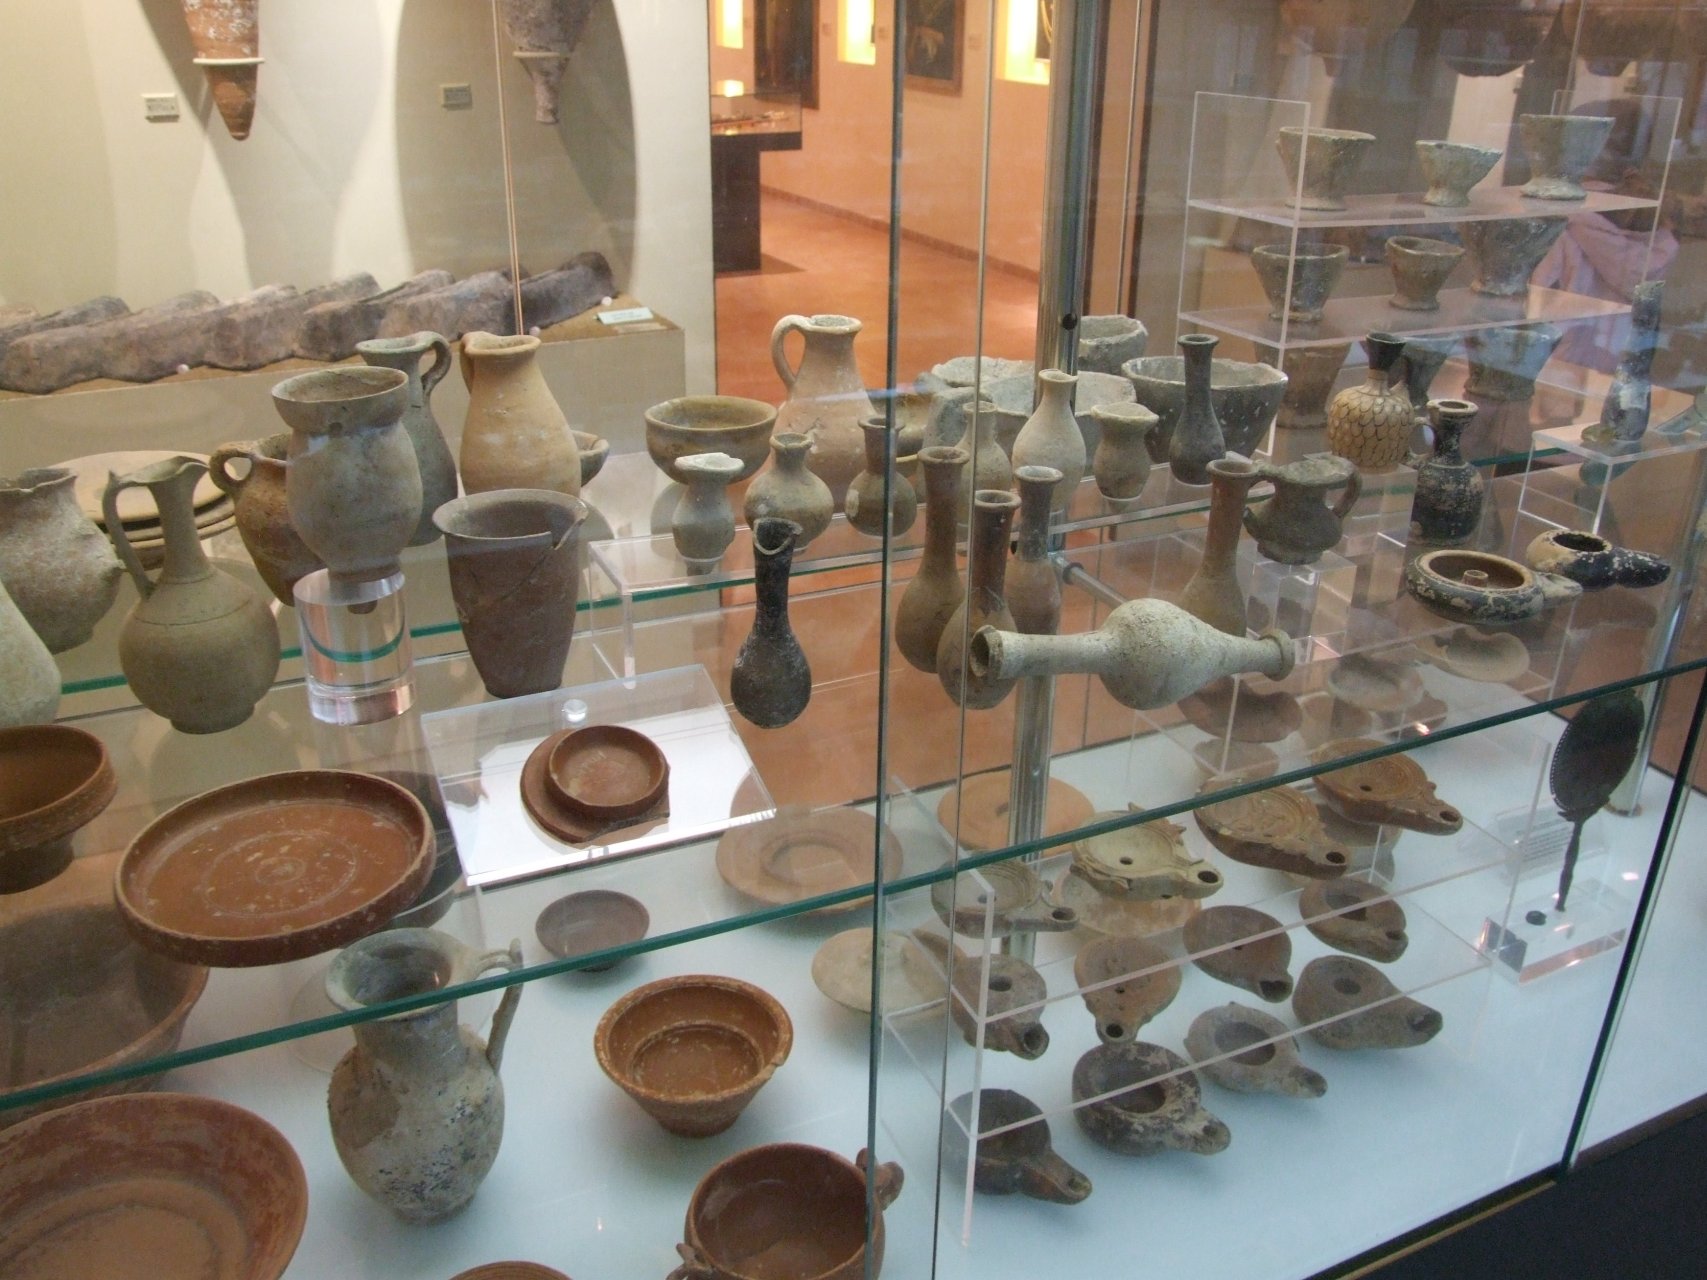 Zbiory archeologiczne przyklasztornego muzeum